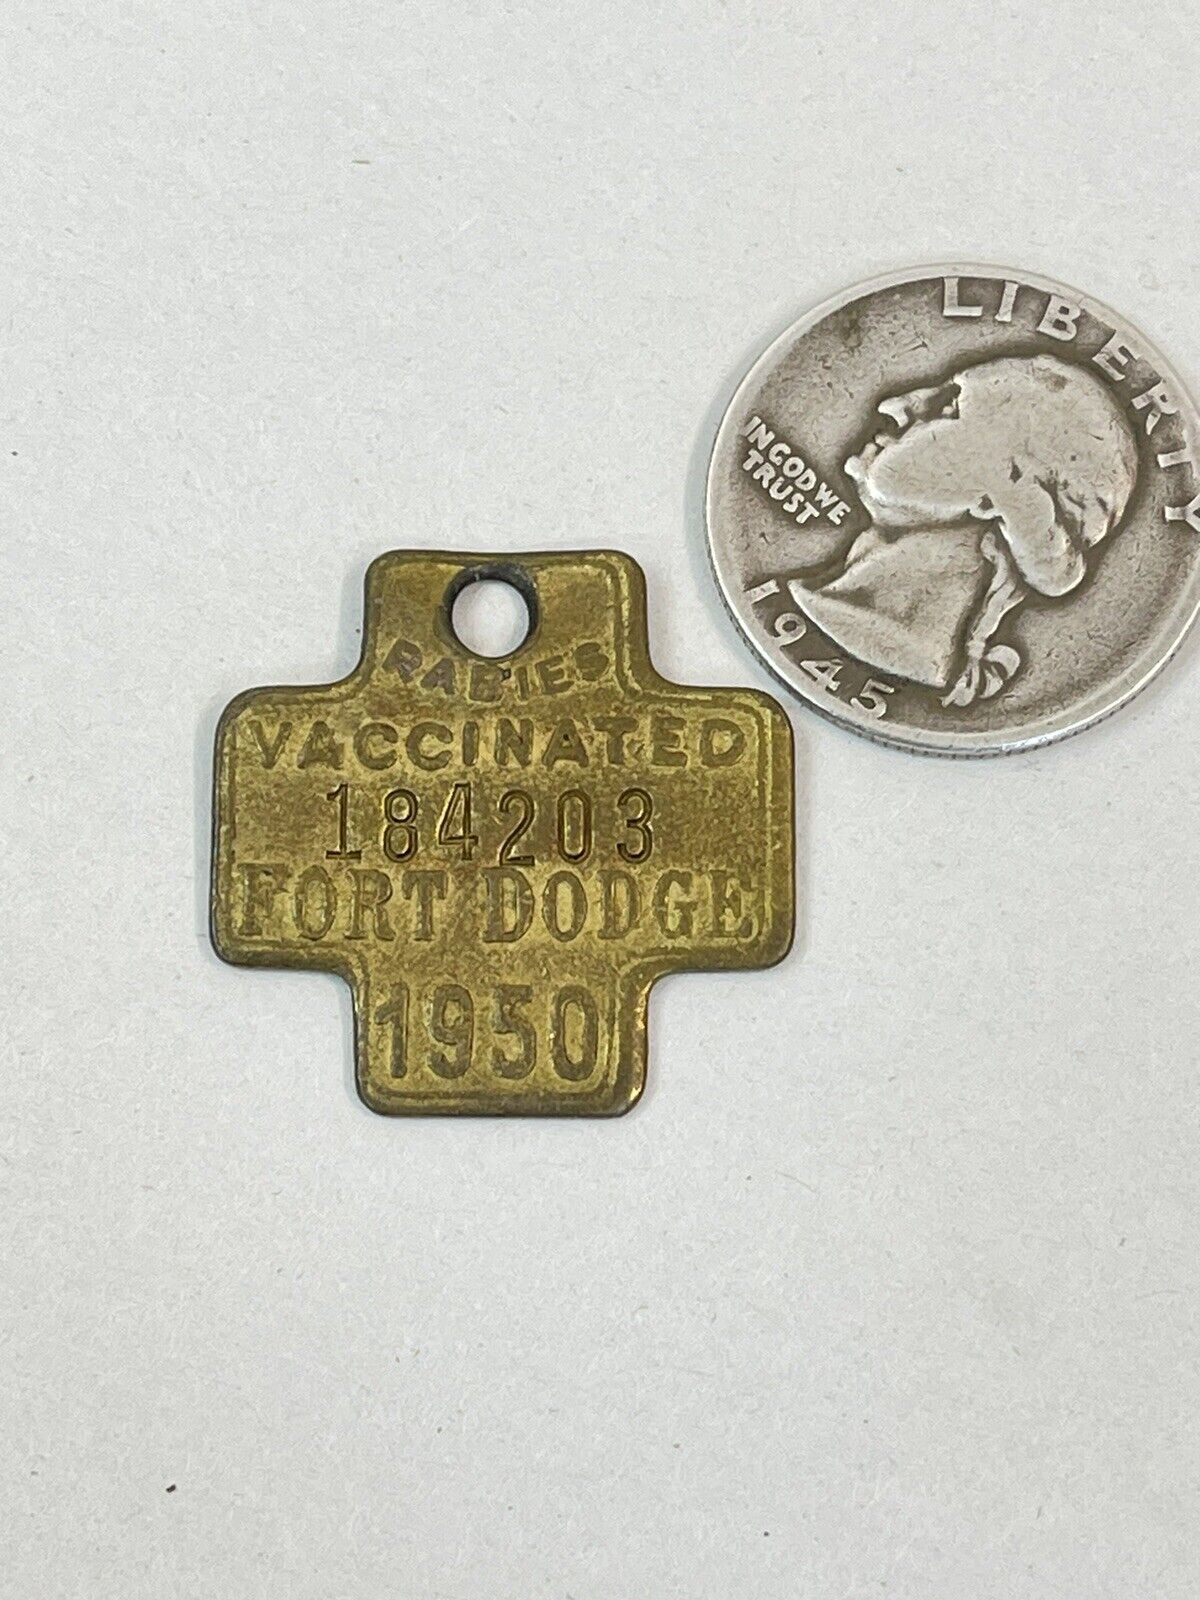 Vintage Original 1950 FORT DODGE Rabies Vaccinated Dog License 184203